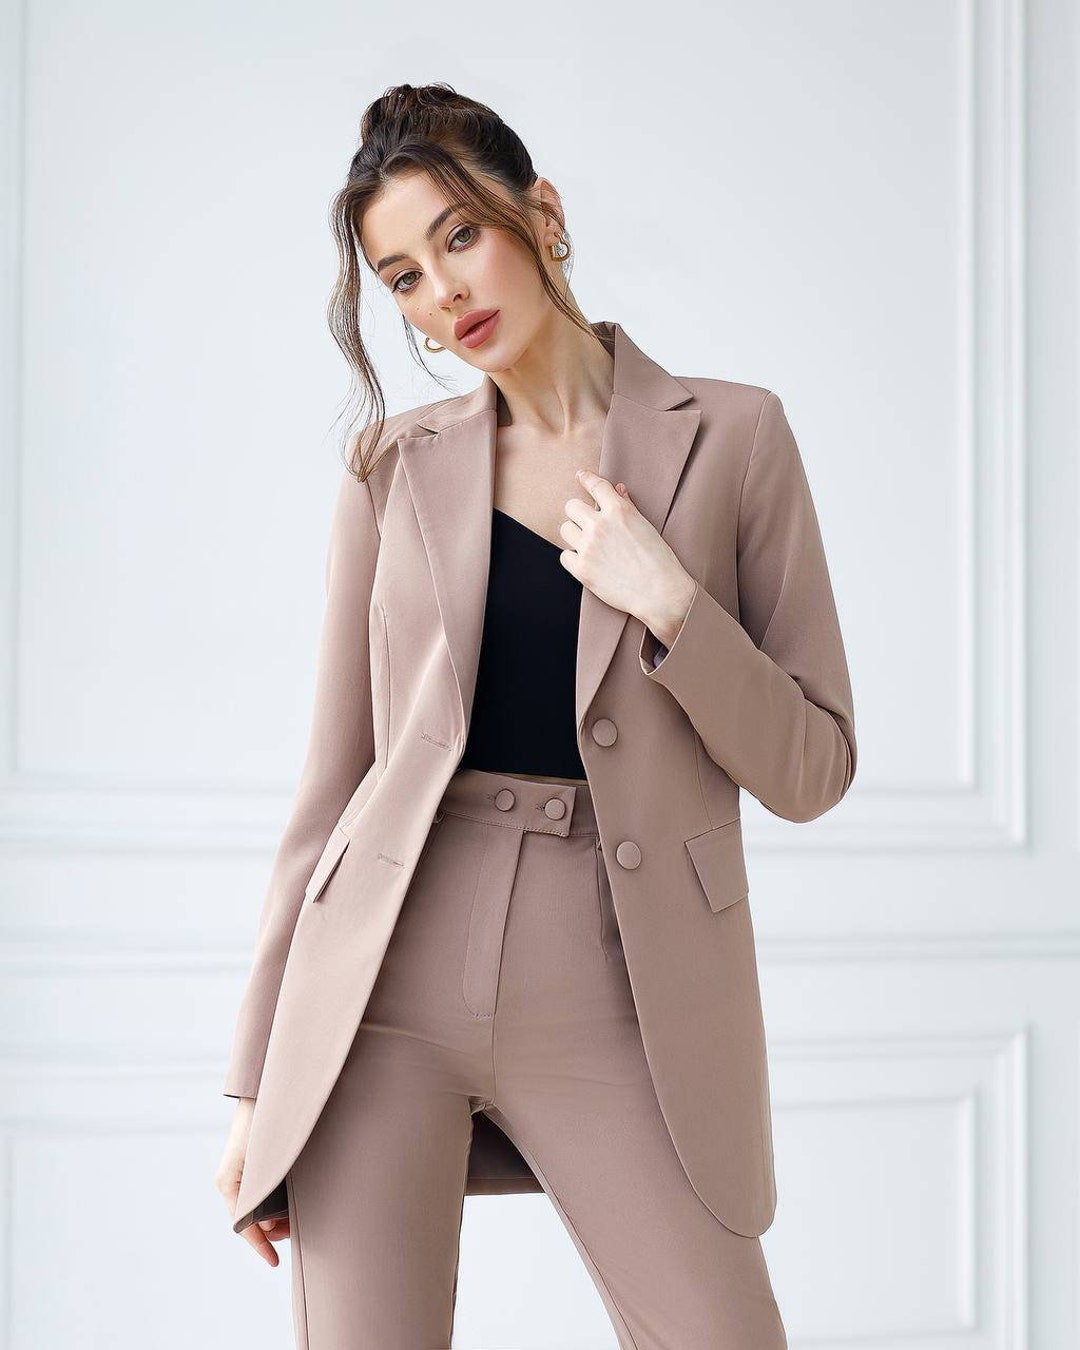 Classic Formal Pantsuit for Business Women Office Pants Suit - Etsy